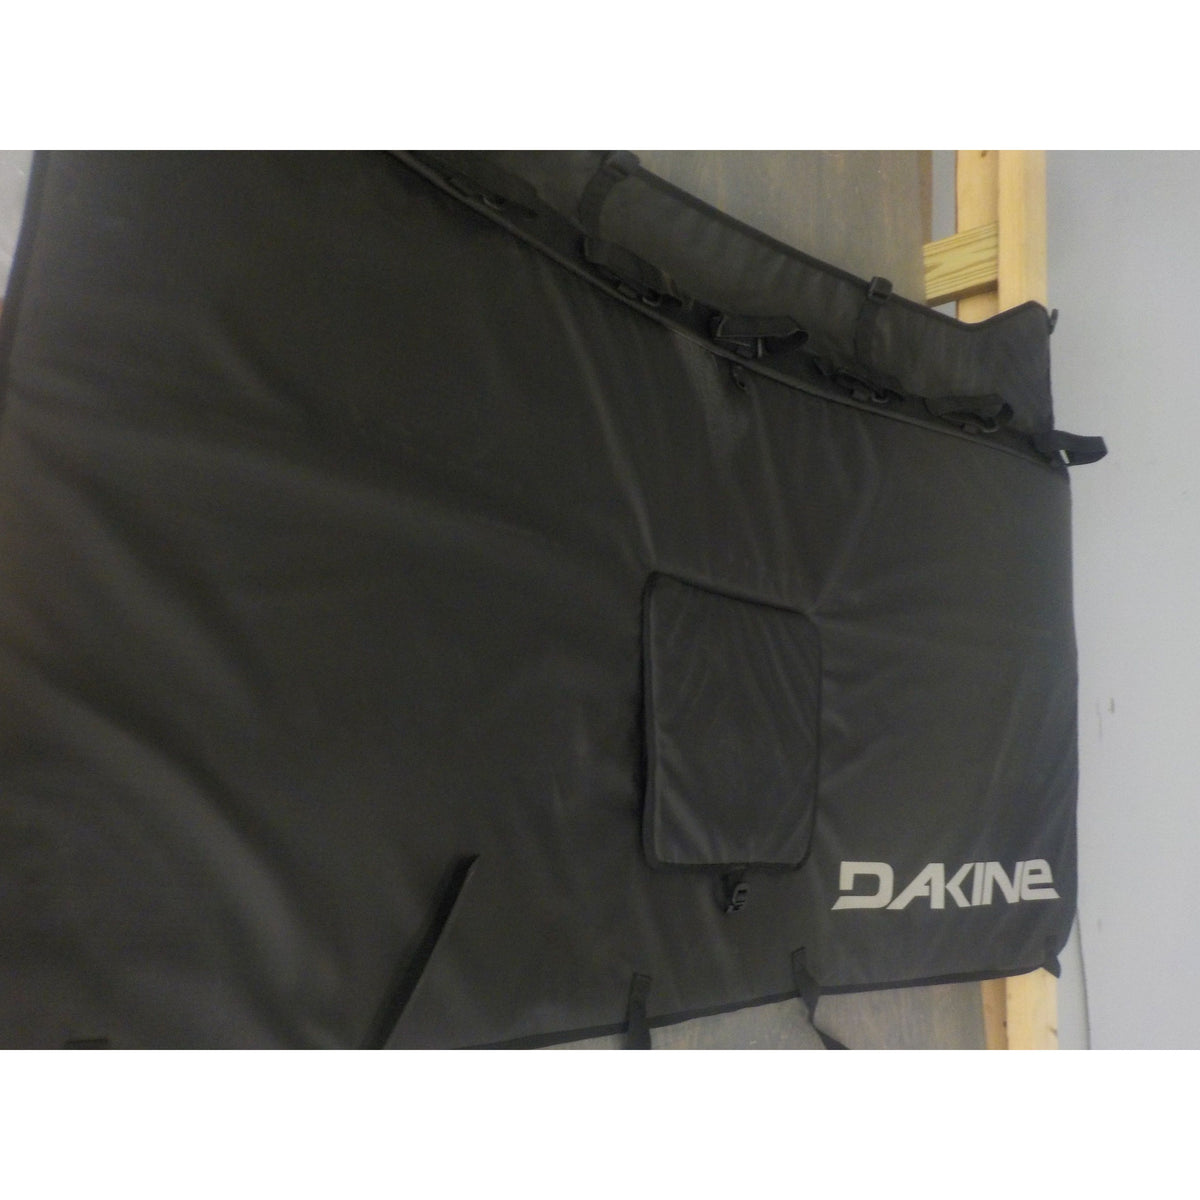 Dakine Pickup Pad DLX - Black - Large - Used - Acceptable